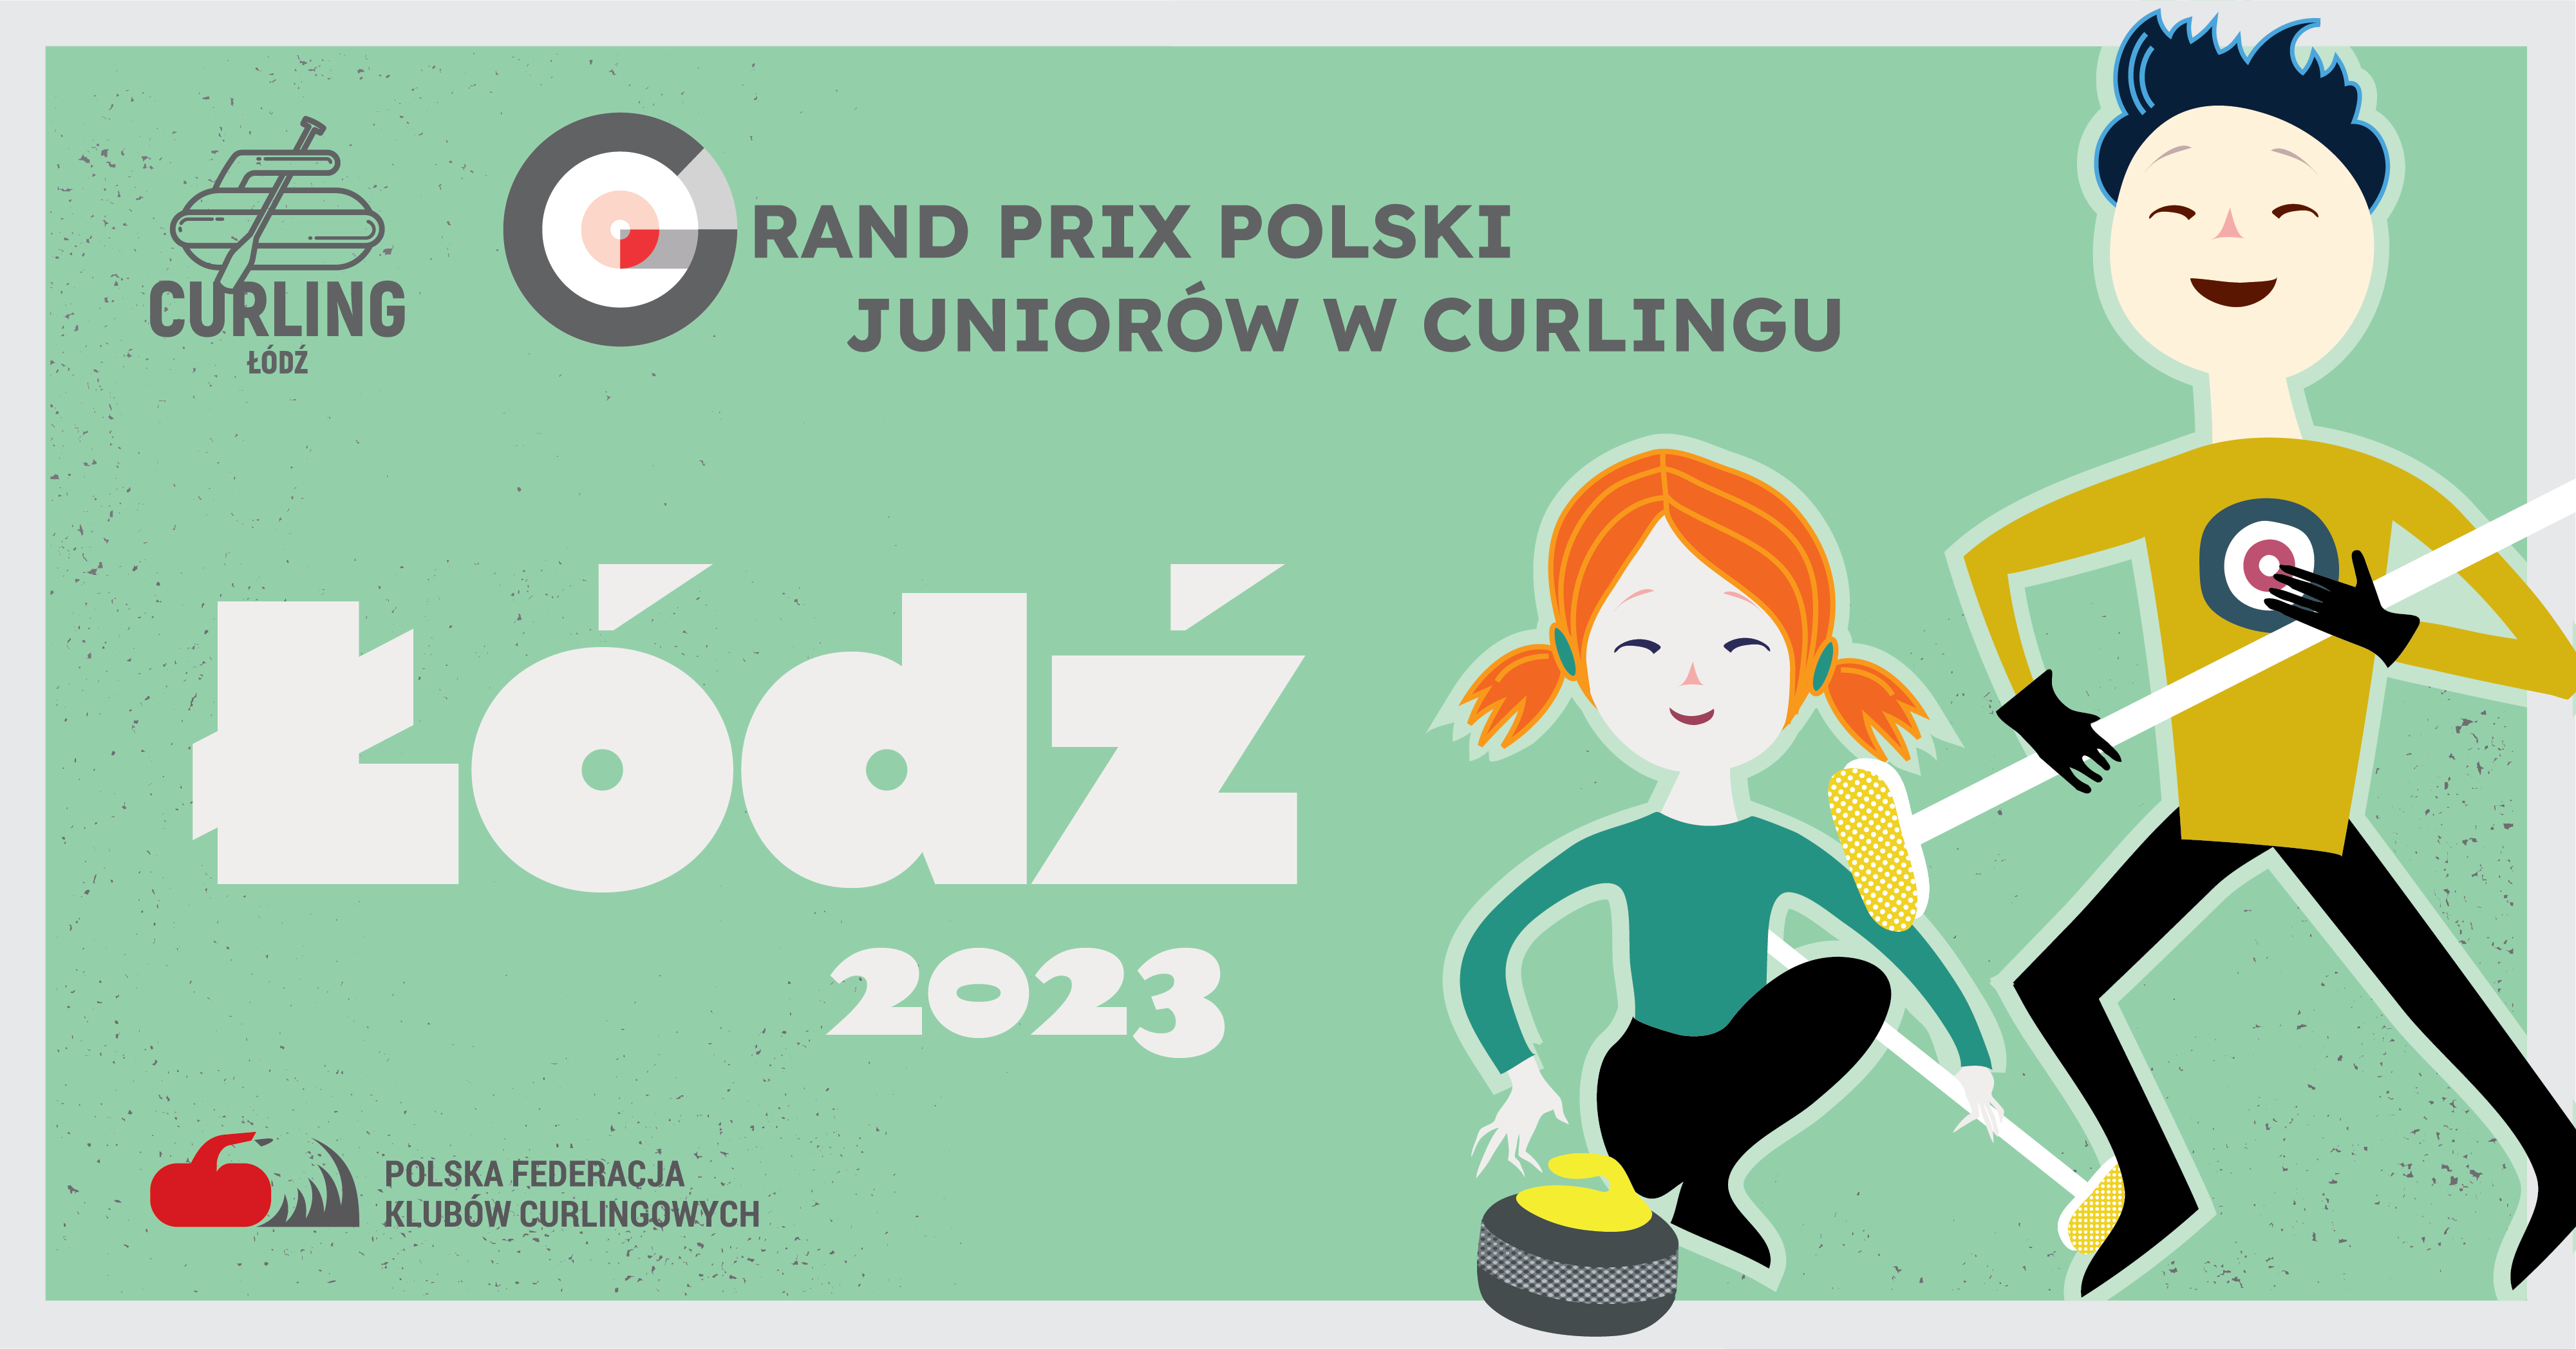 Grand Prix Polski Juniorów: Łódź 2023